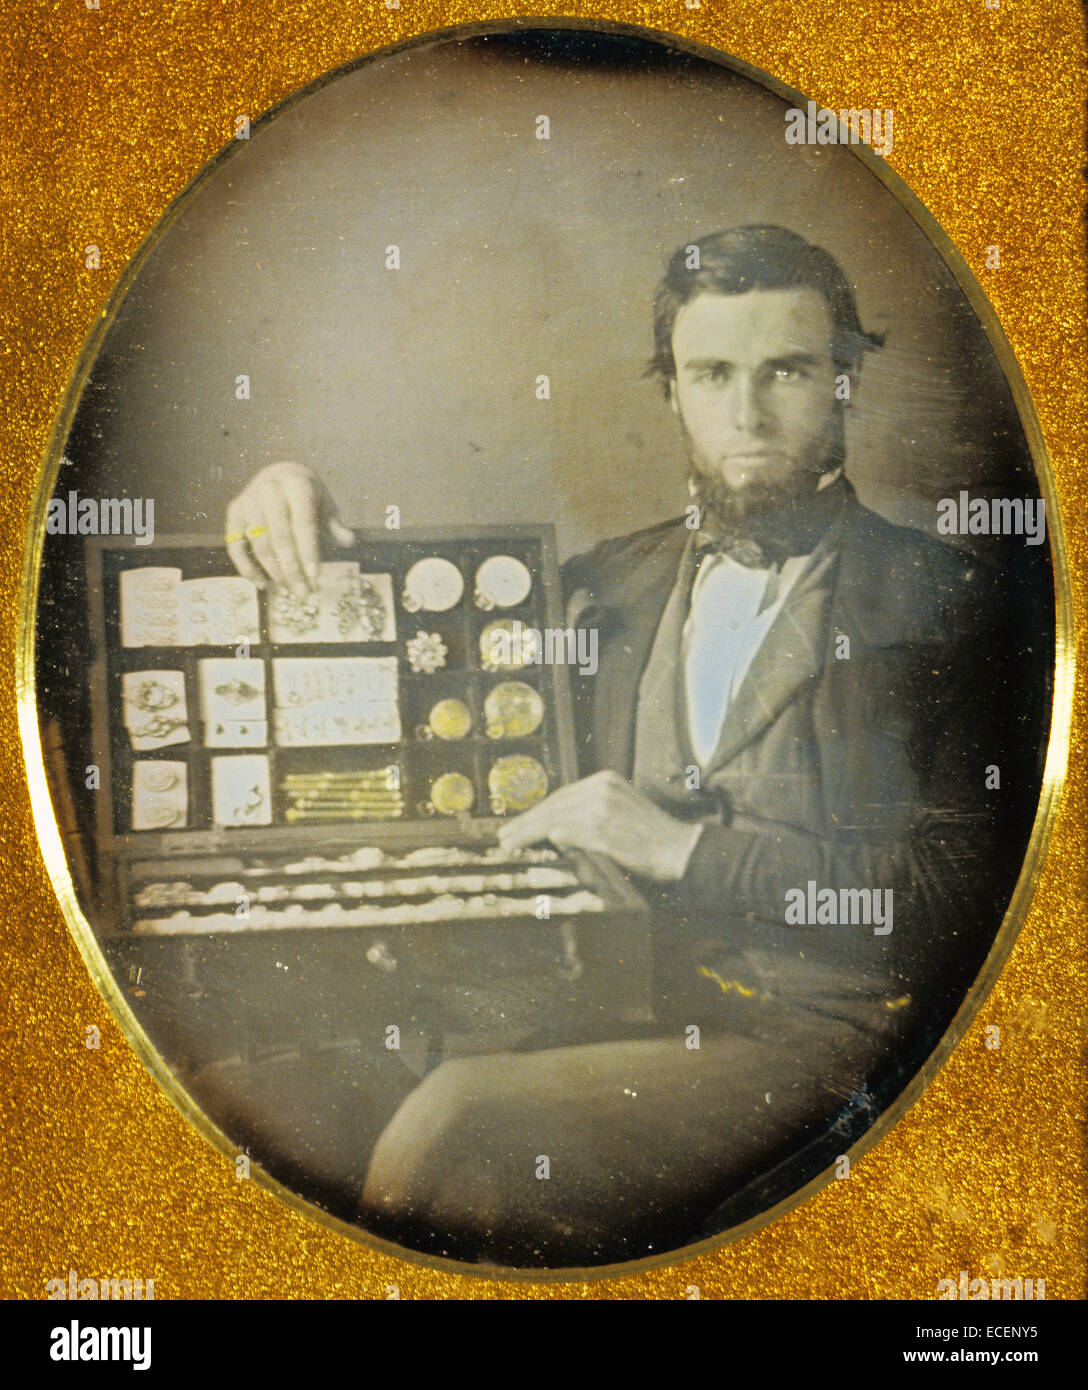 Ritratto di un venditore di gioielli, attribuita a Robert H. Vance, americano, 1825 - 1876; 1853 - 1854; Daguerreotype, colorate a mano; 1/6 piastra, Immagine: 7,1 x 5,9 cm (2 13/16 x 2 5/16 in.) Foto Stock